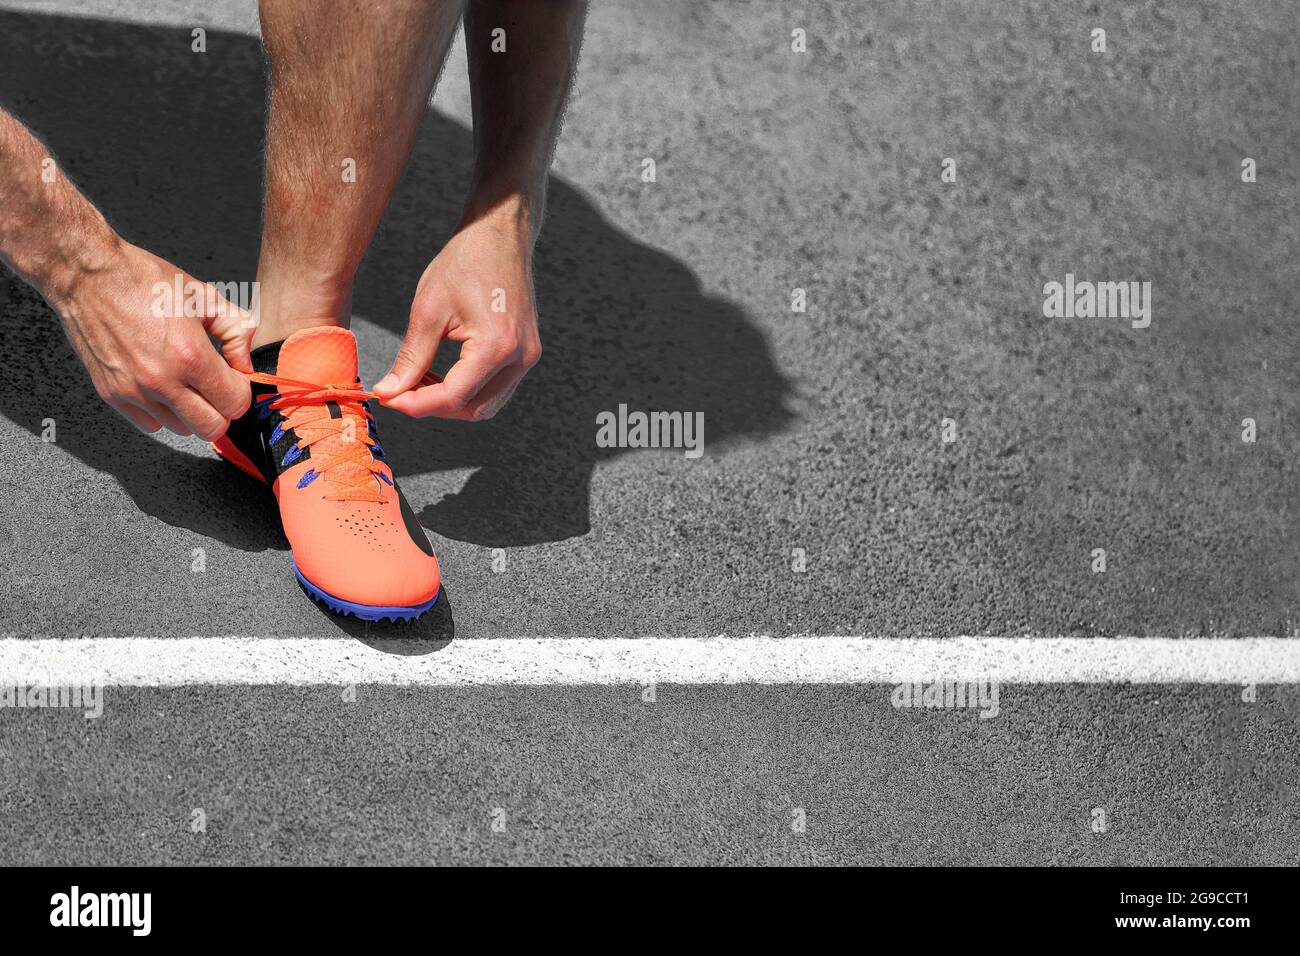 Läufer Mann bereit, auf Asphalt Straße laufen zu beginnen binden Laufschuhe Schnürsenkel auf grauem Hintergrund. Platz für Text mit Startzeile kopieren. Stockfoto